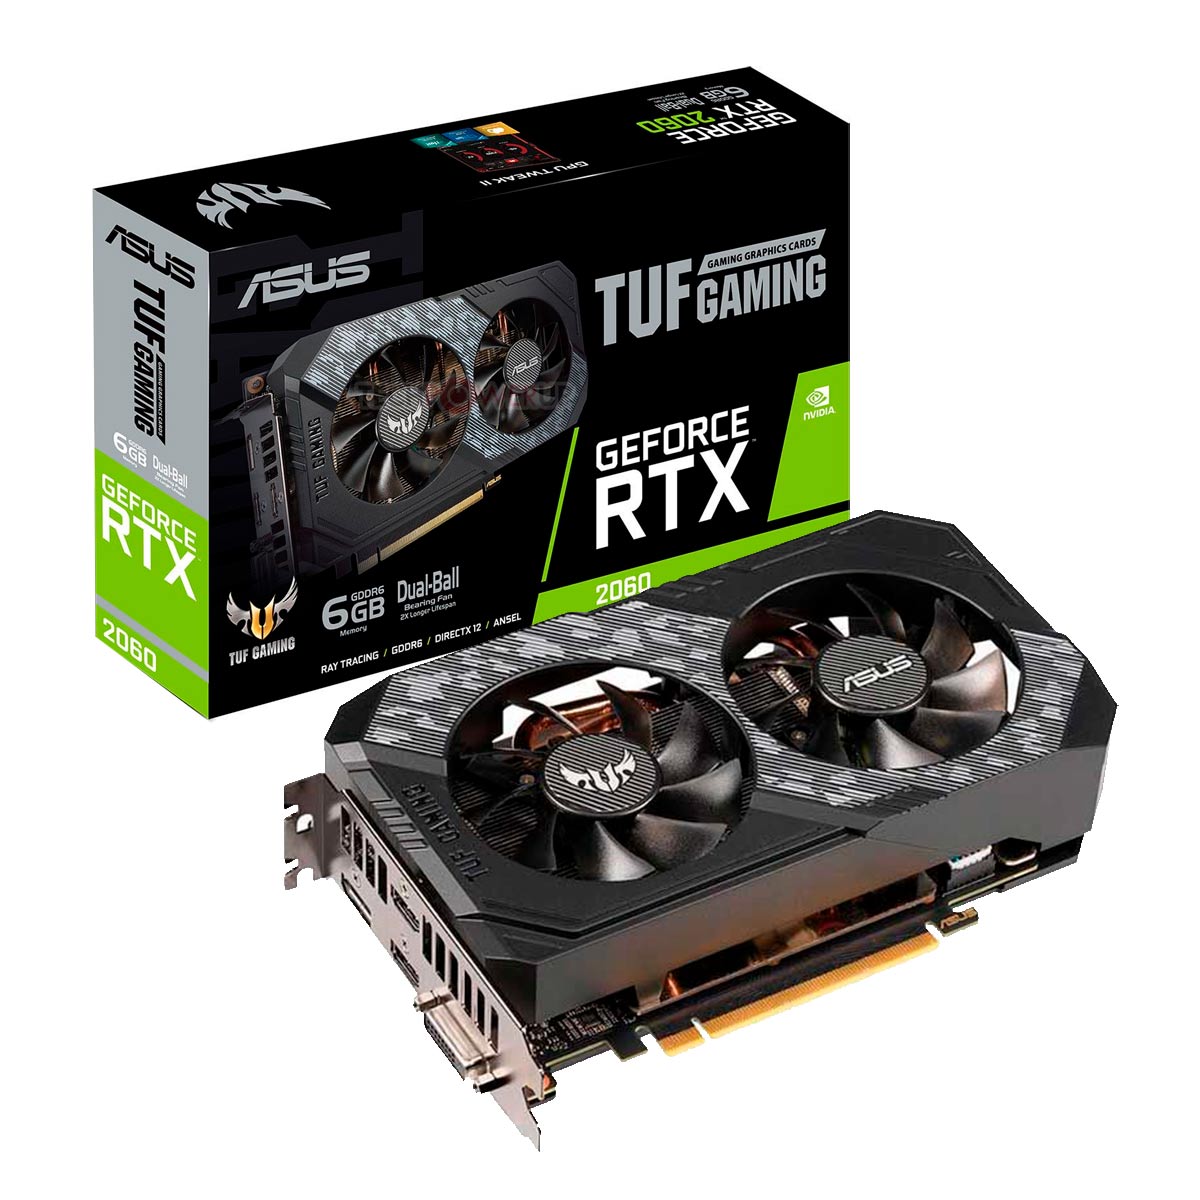 GeForce RTX 2060 6GB GDDR6 192bits - TUF Gaming - Asus TUF-RTX2060-6G-GAMING